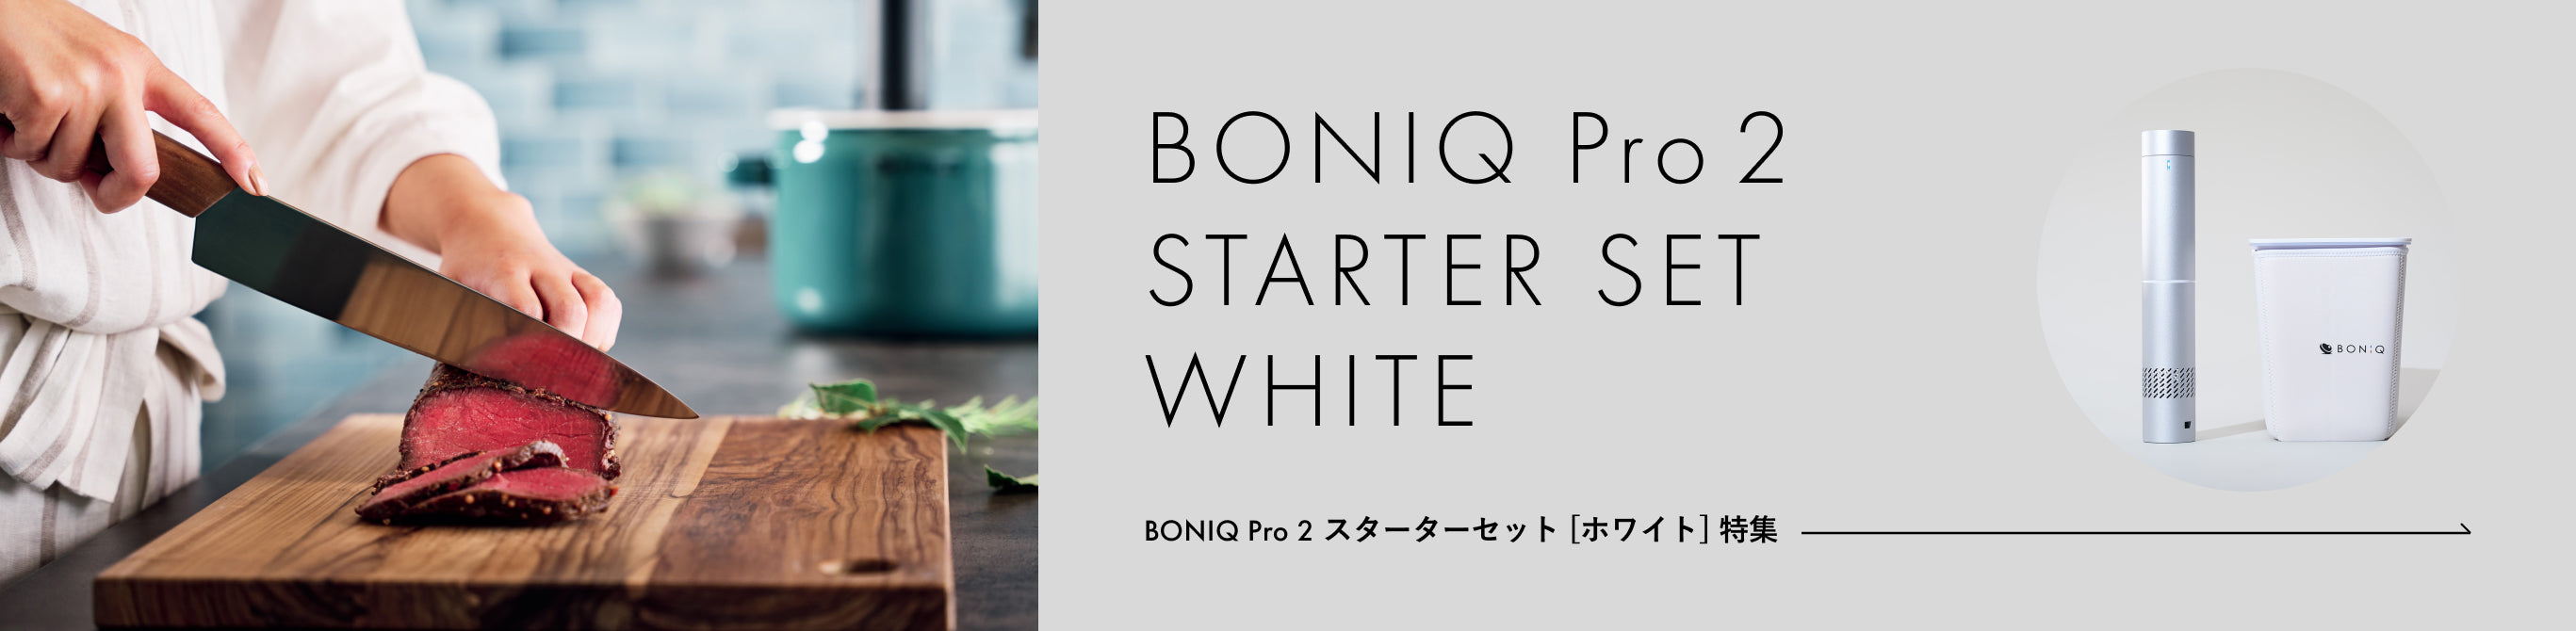 BONIQ Pro2 スターターセット[ホワイト] 特集